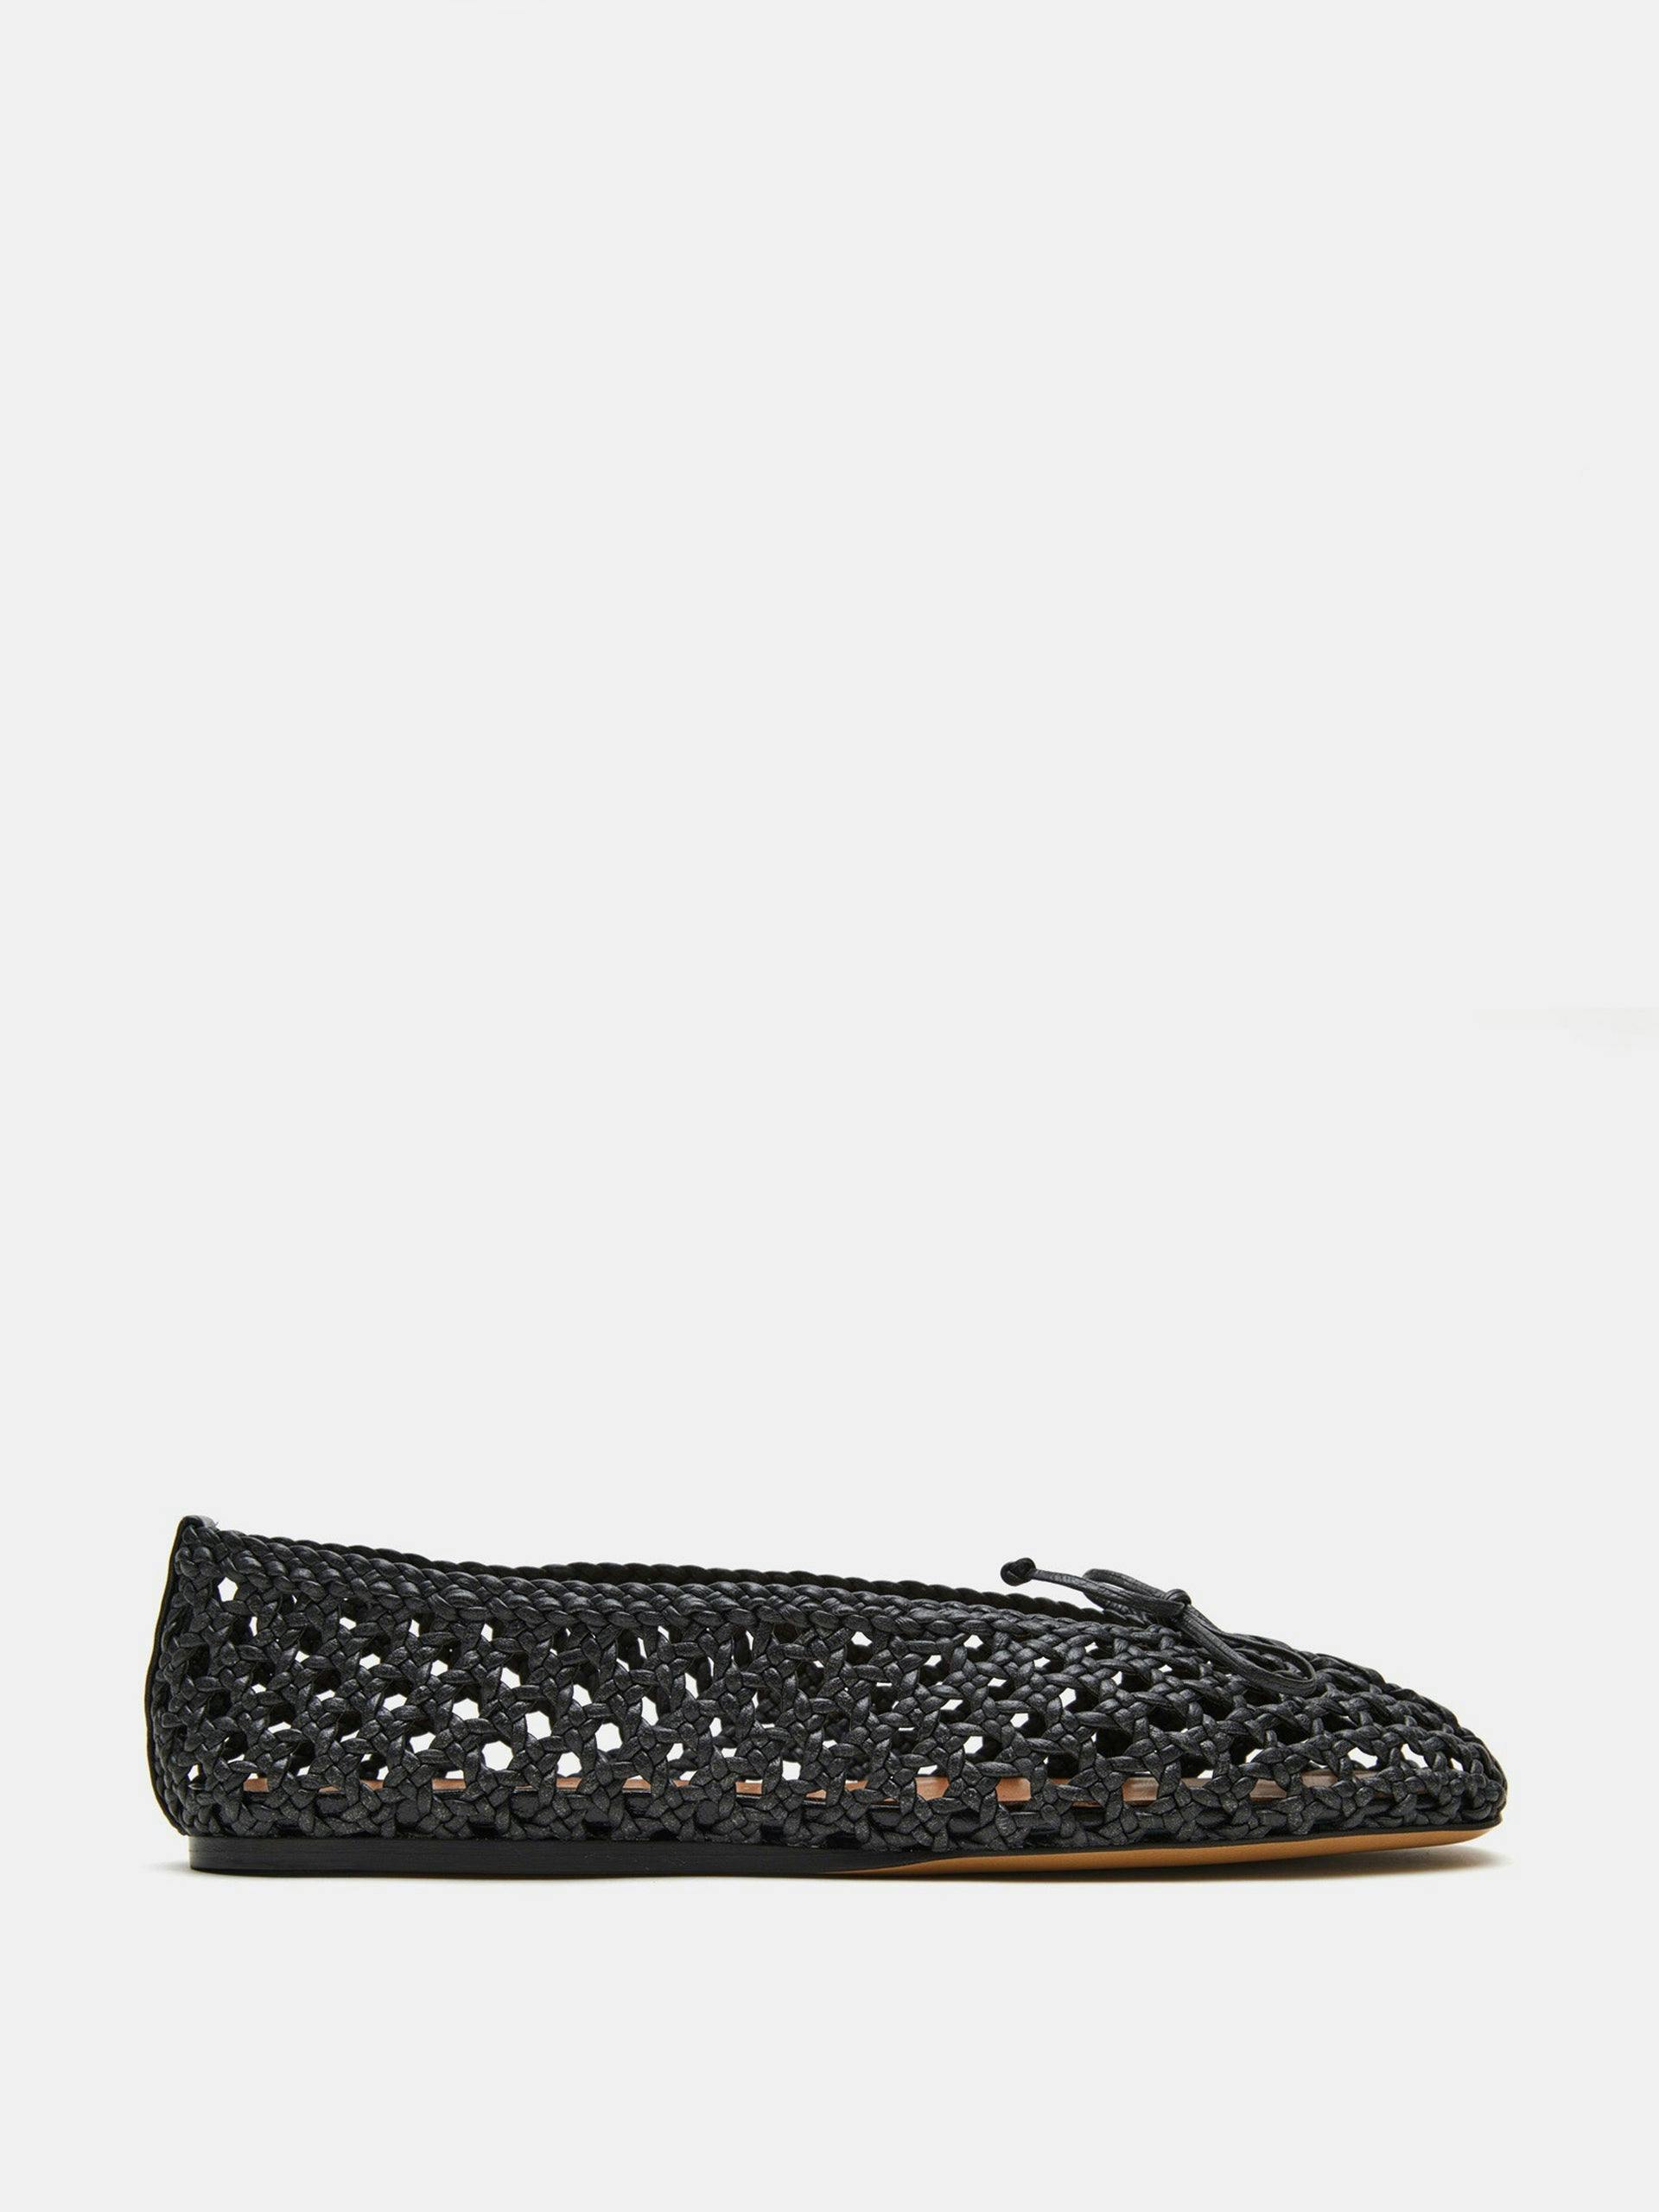 Black leather woven Regency slipper